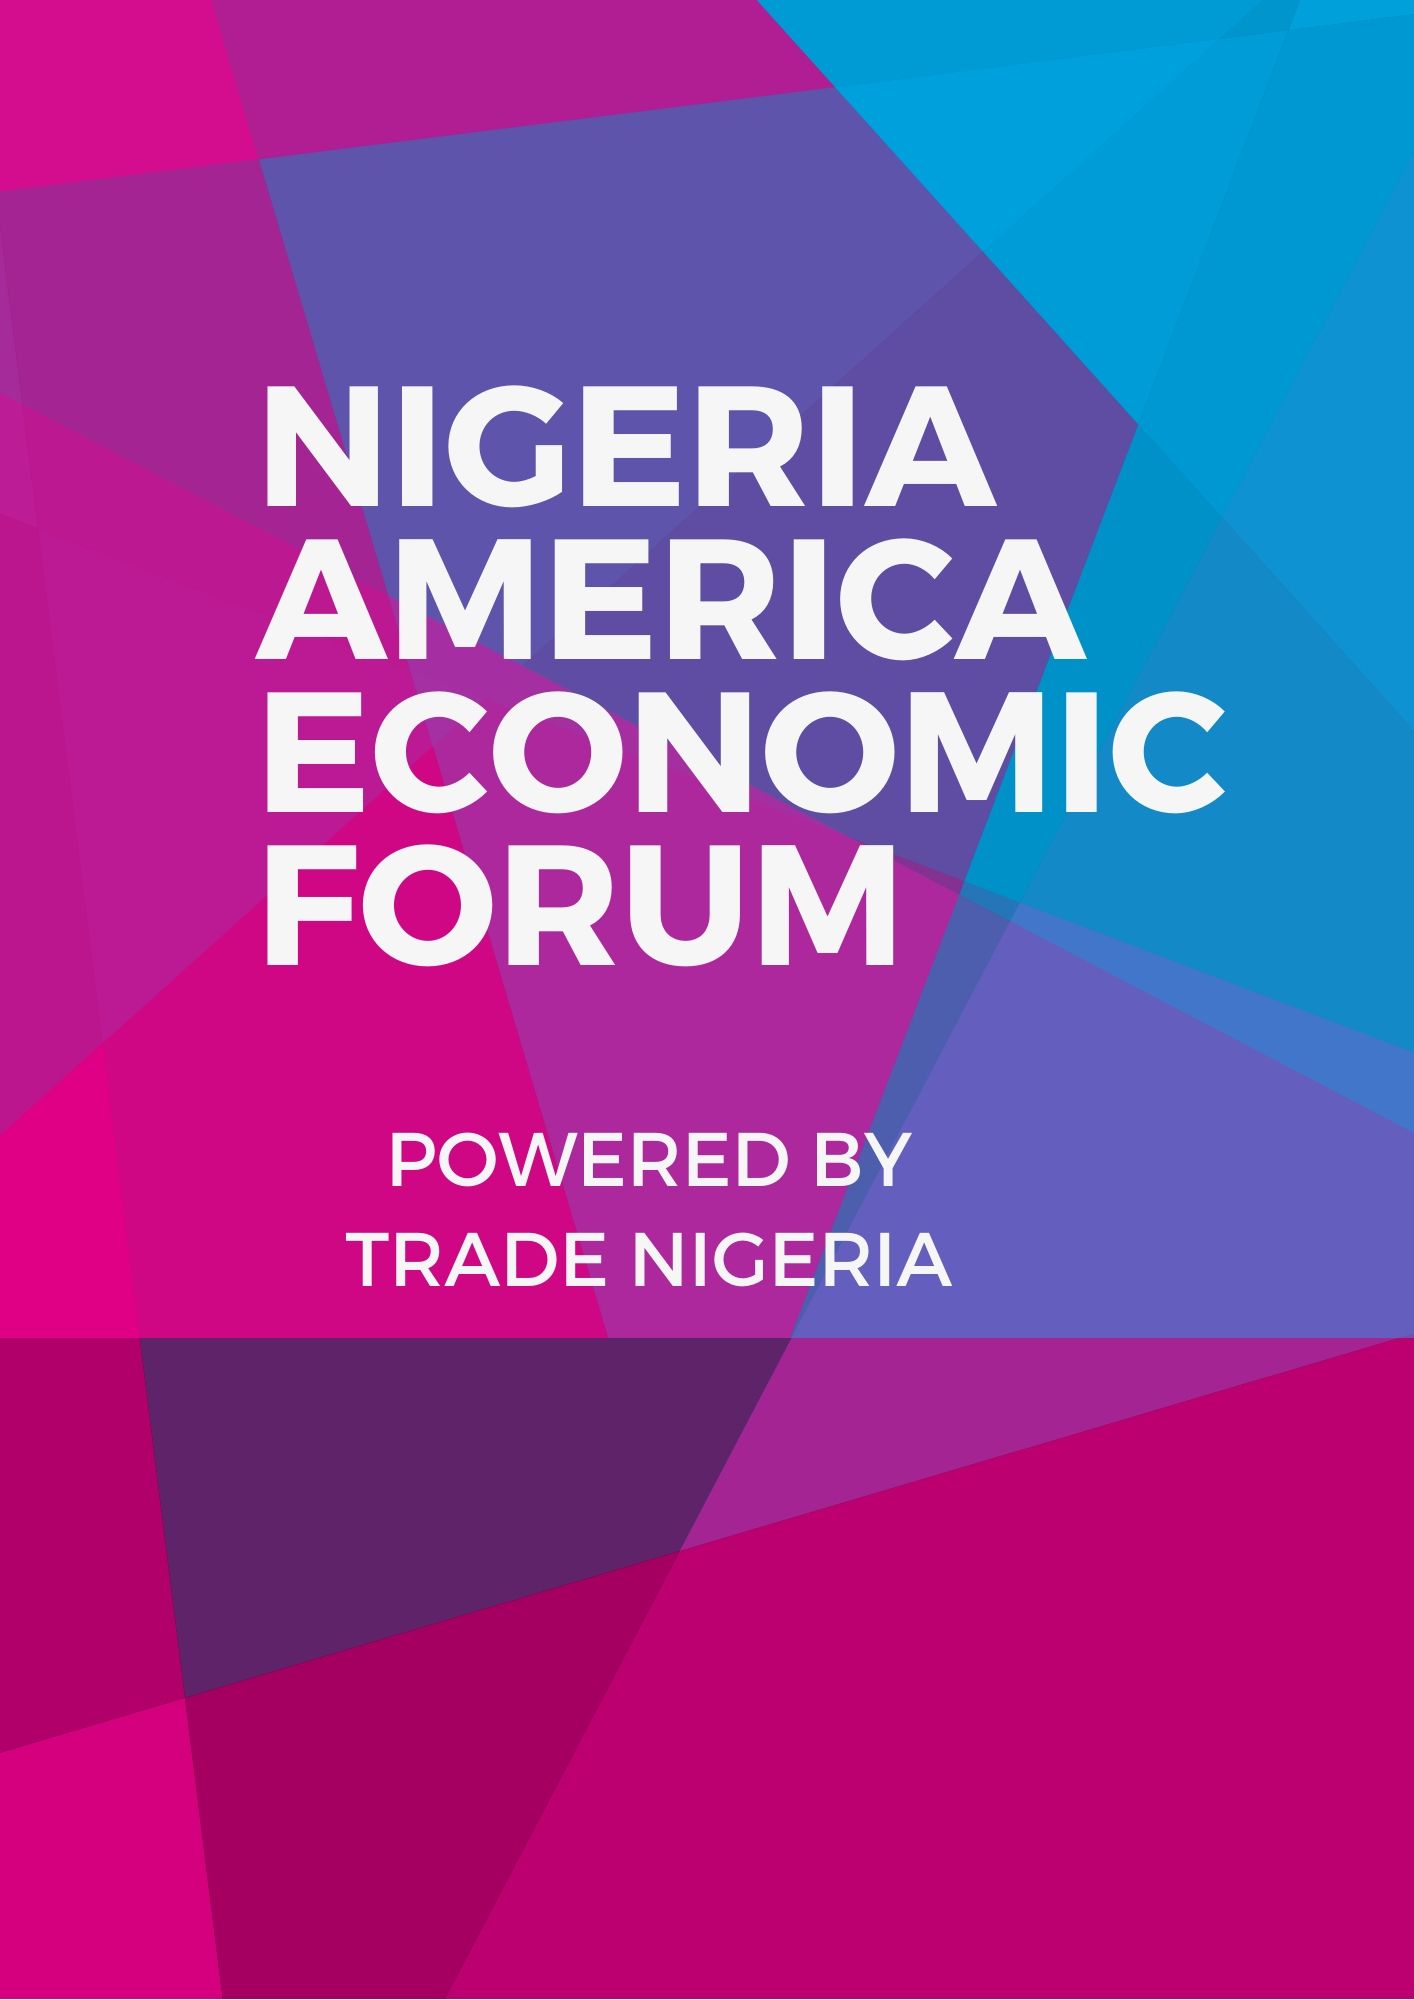 Nigeria America Economic Forum - Nairaland / General - Nigeria